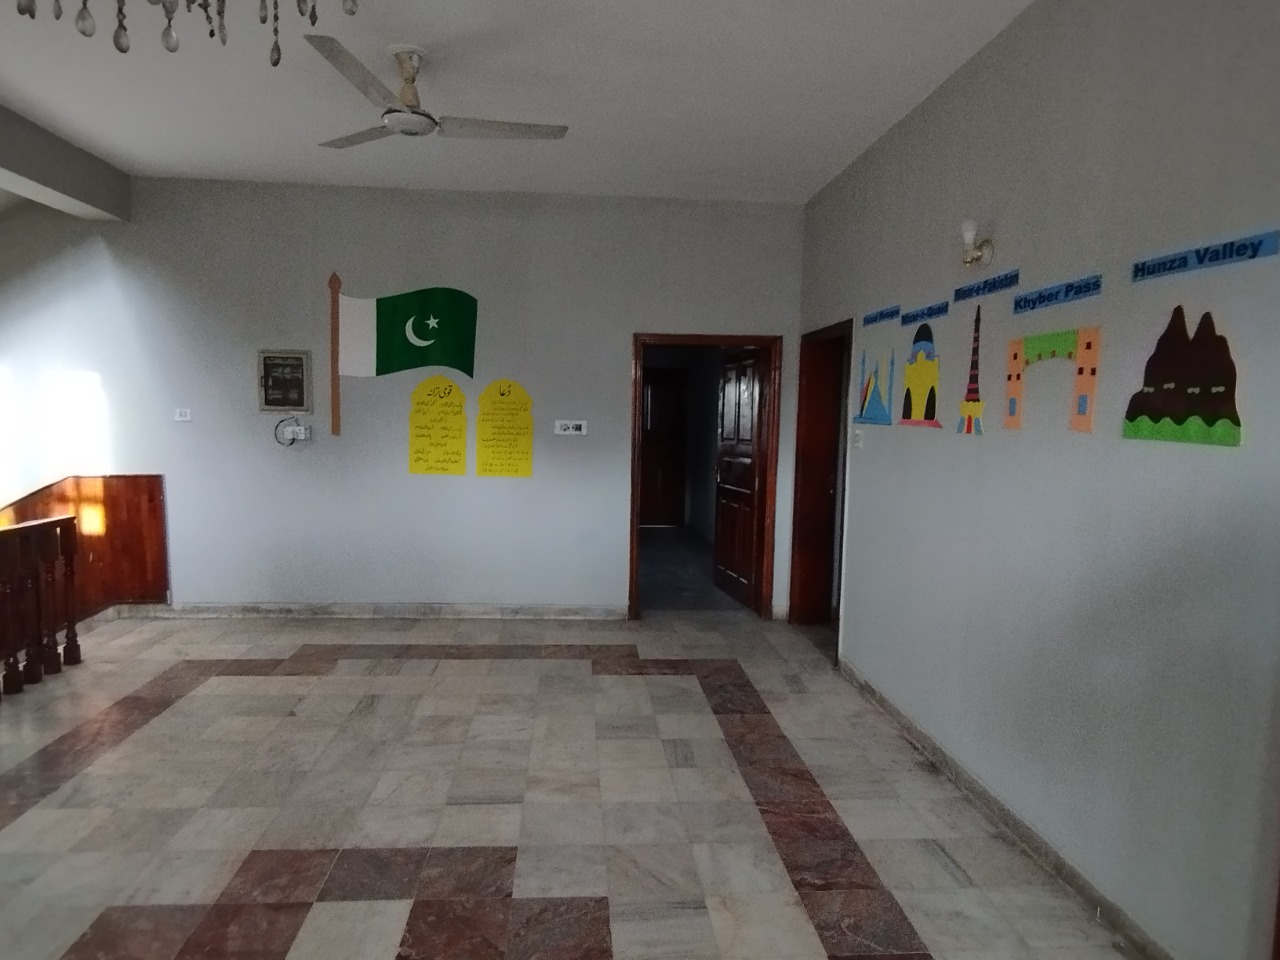 Rahat Abad Campus Peshawar Campus Building